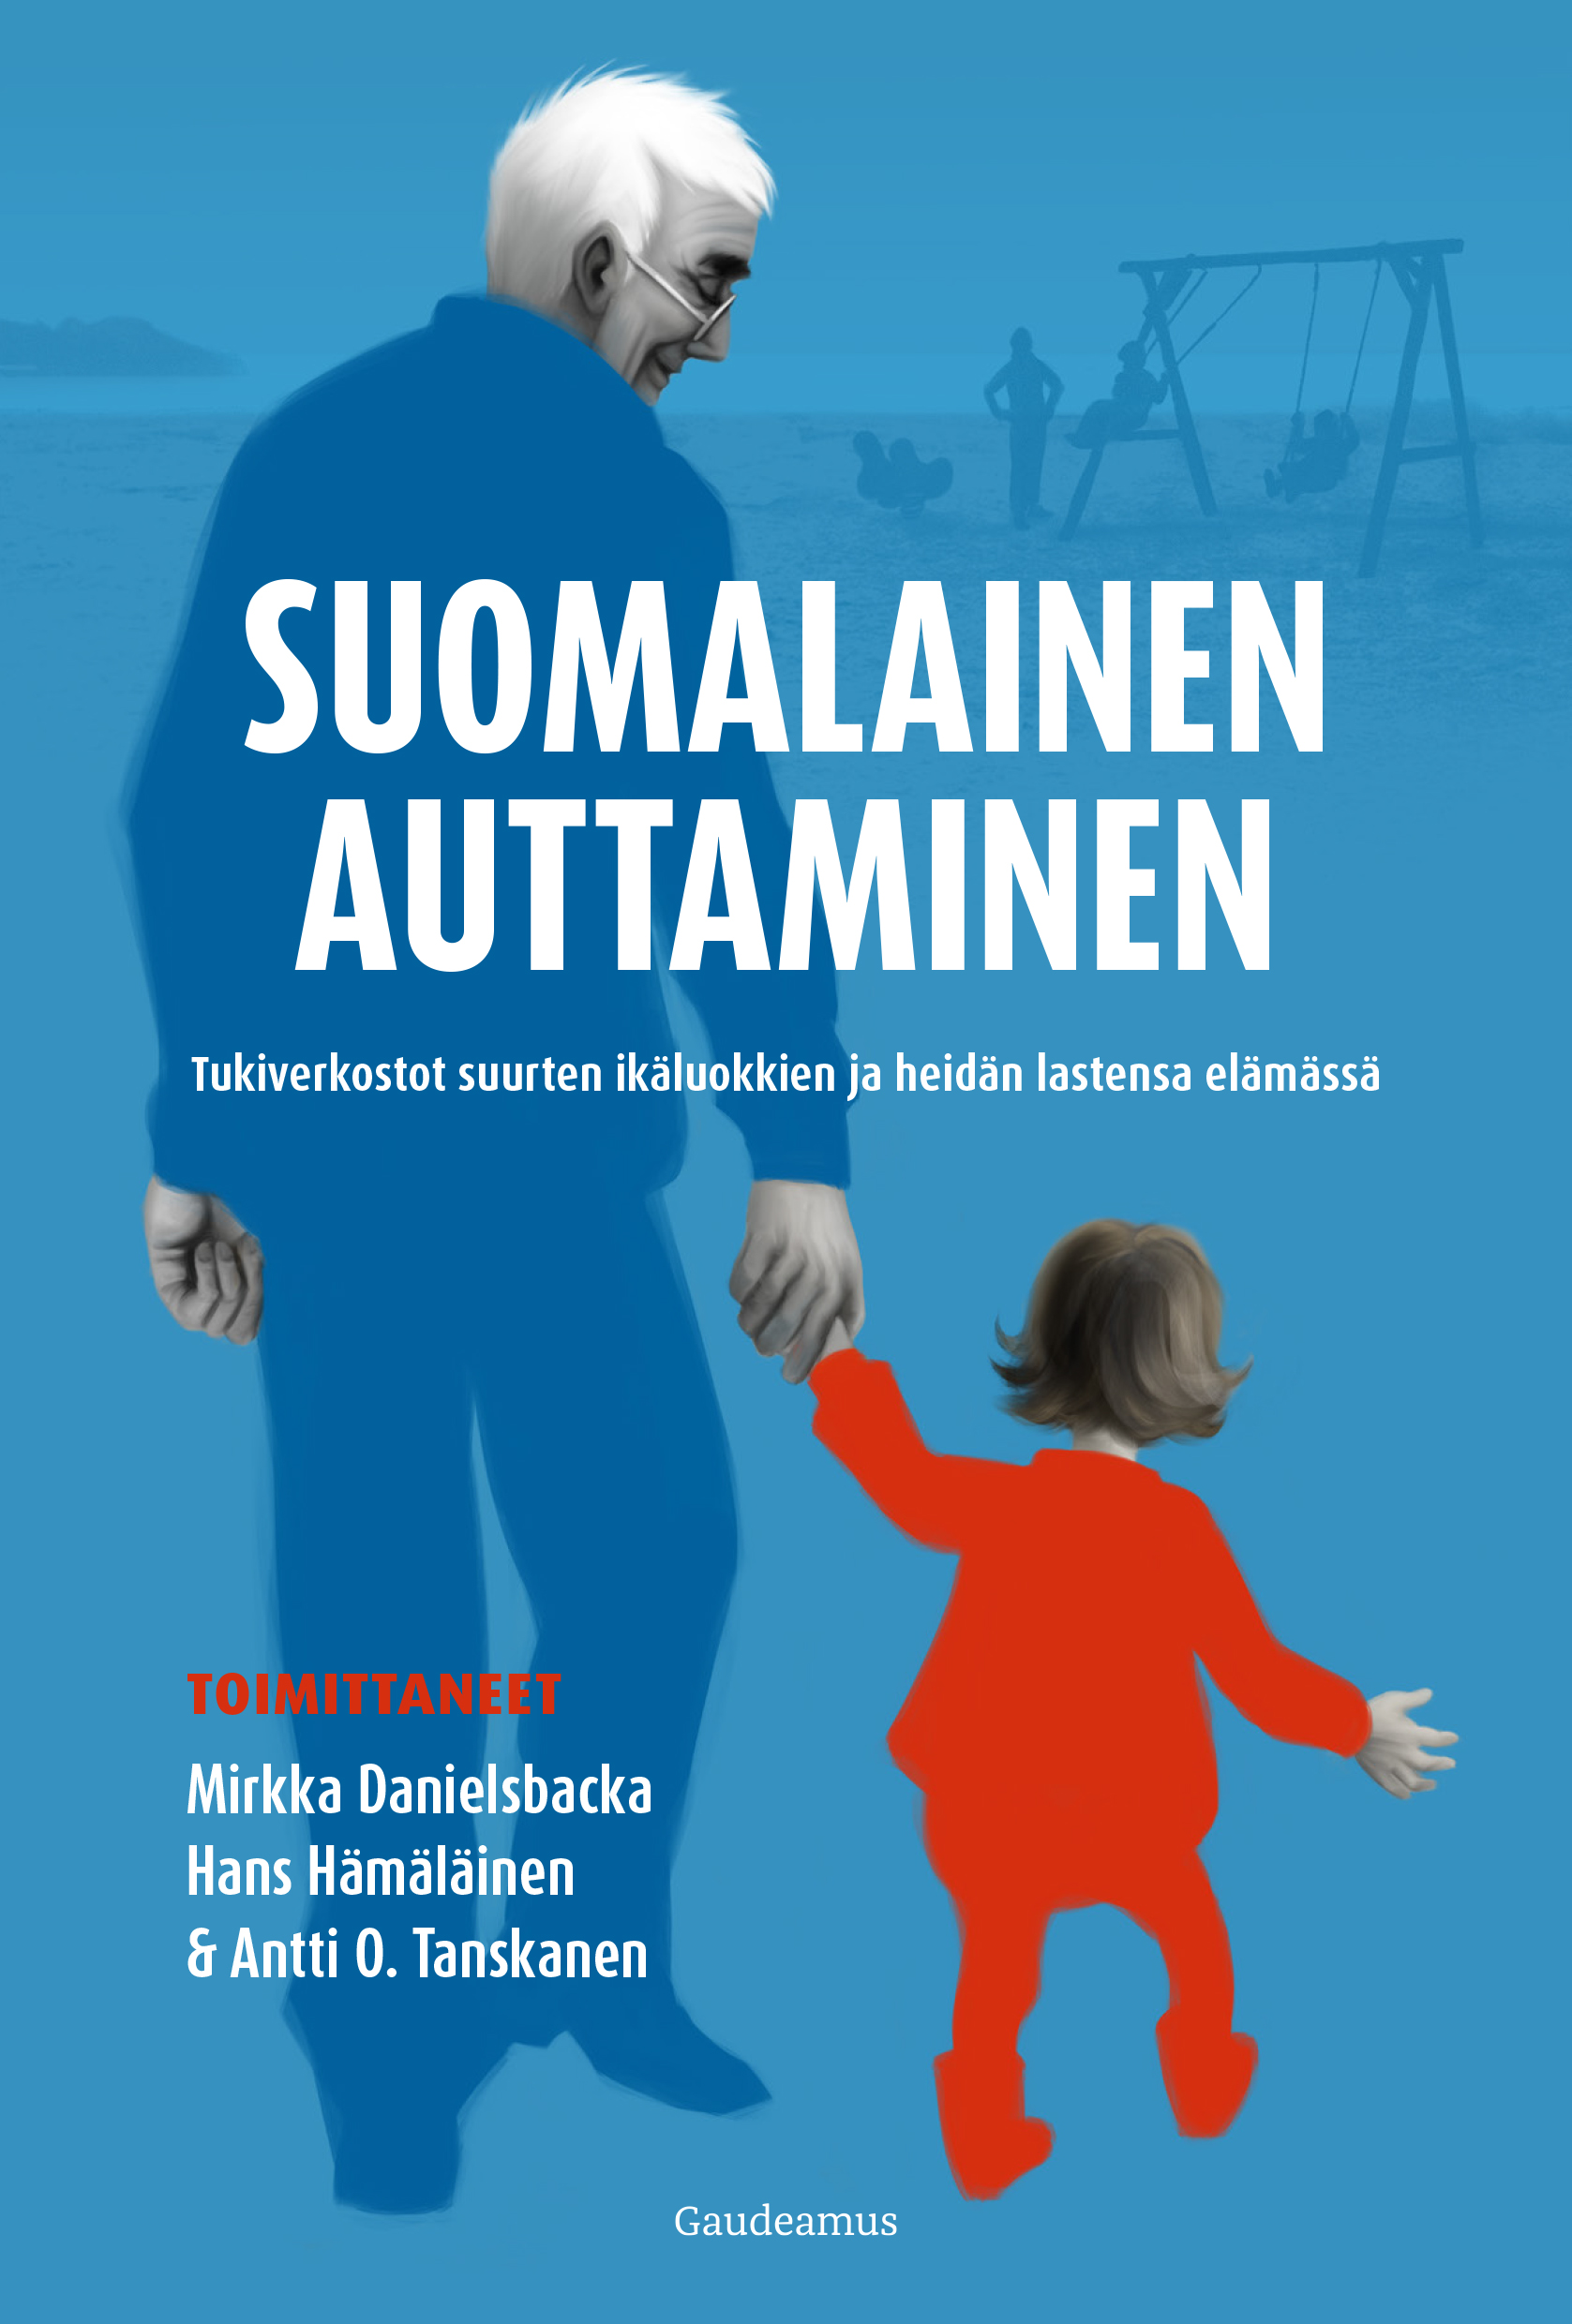 Danielsbacka, Mirkka - Suomalainen auttaminen: Tukiverkostot suurten ikäluokkien ja heidän lastensa elämässä, e-bok